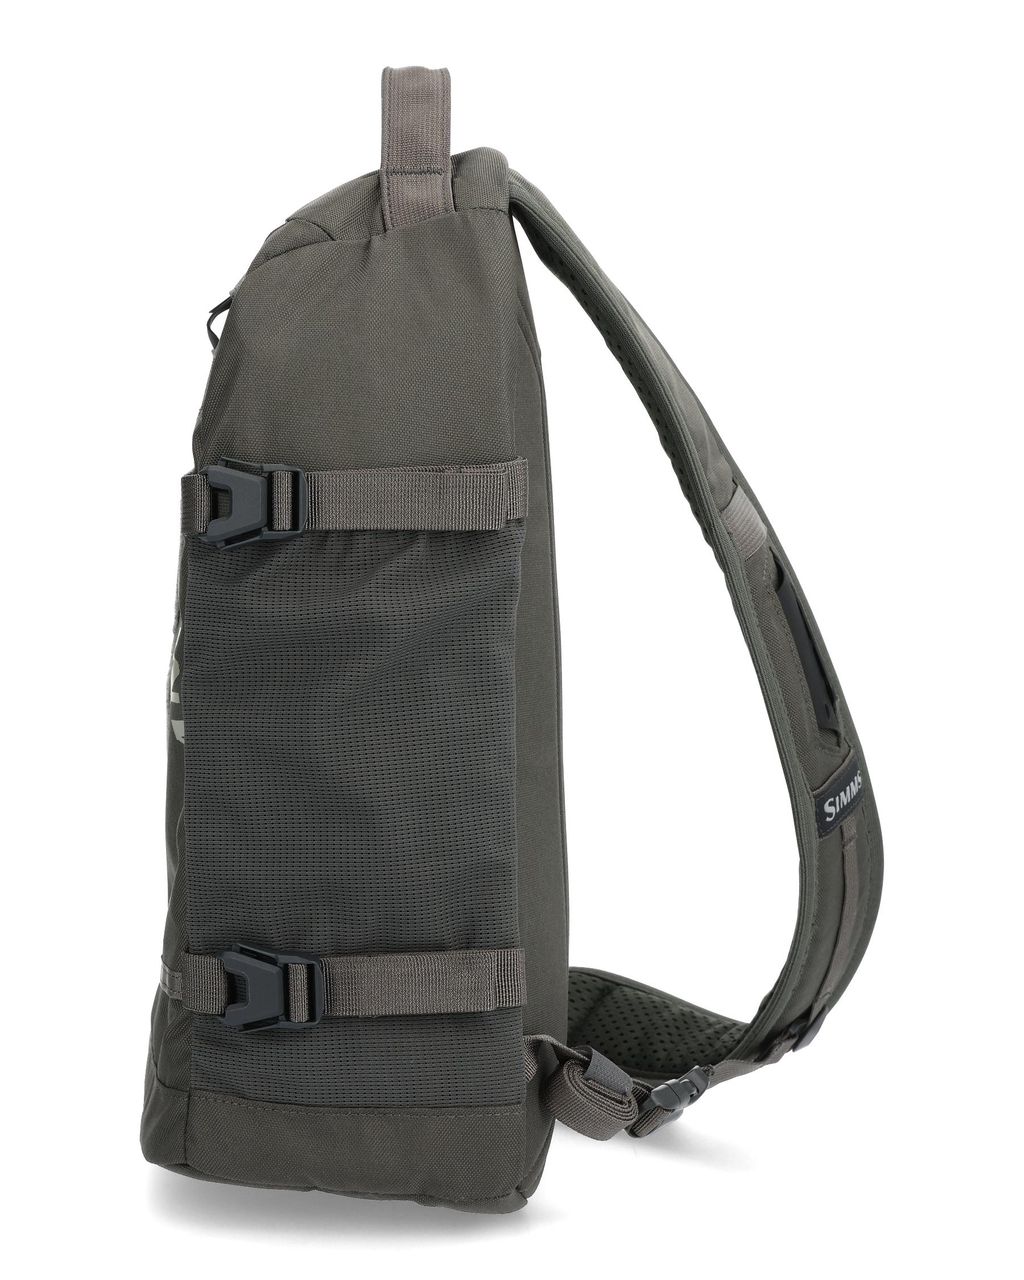 Tributary sling Pack Basalt